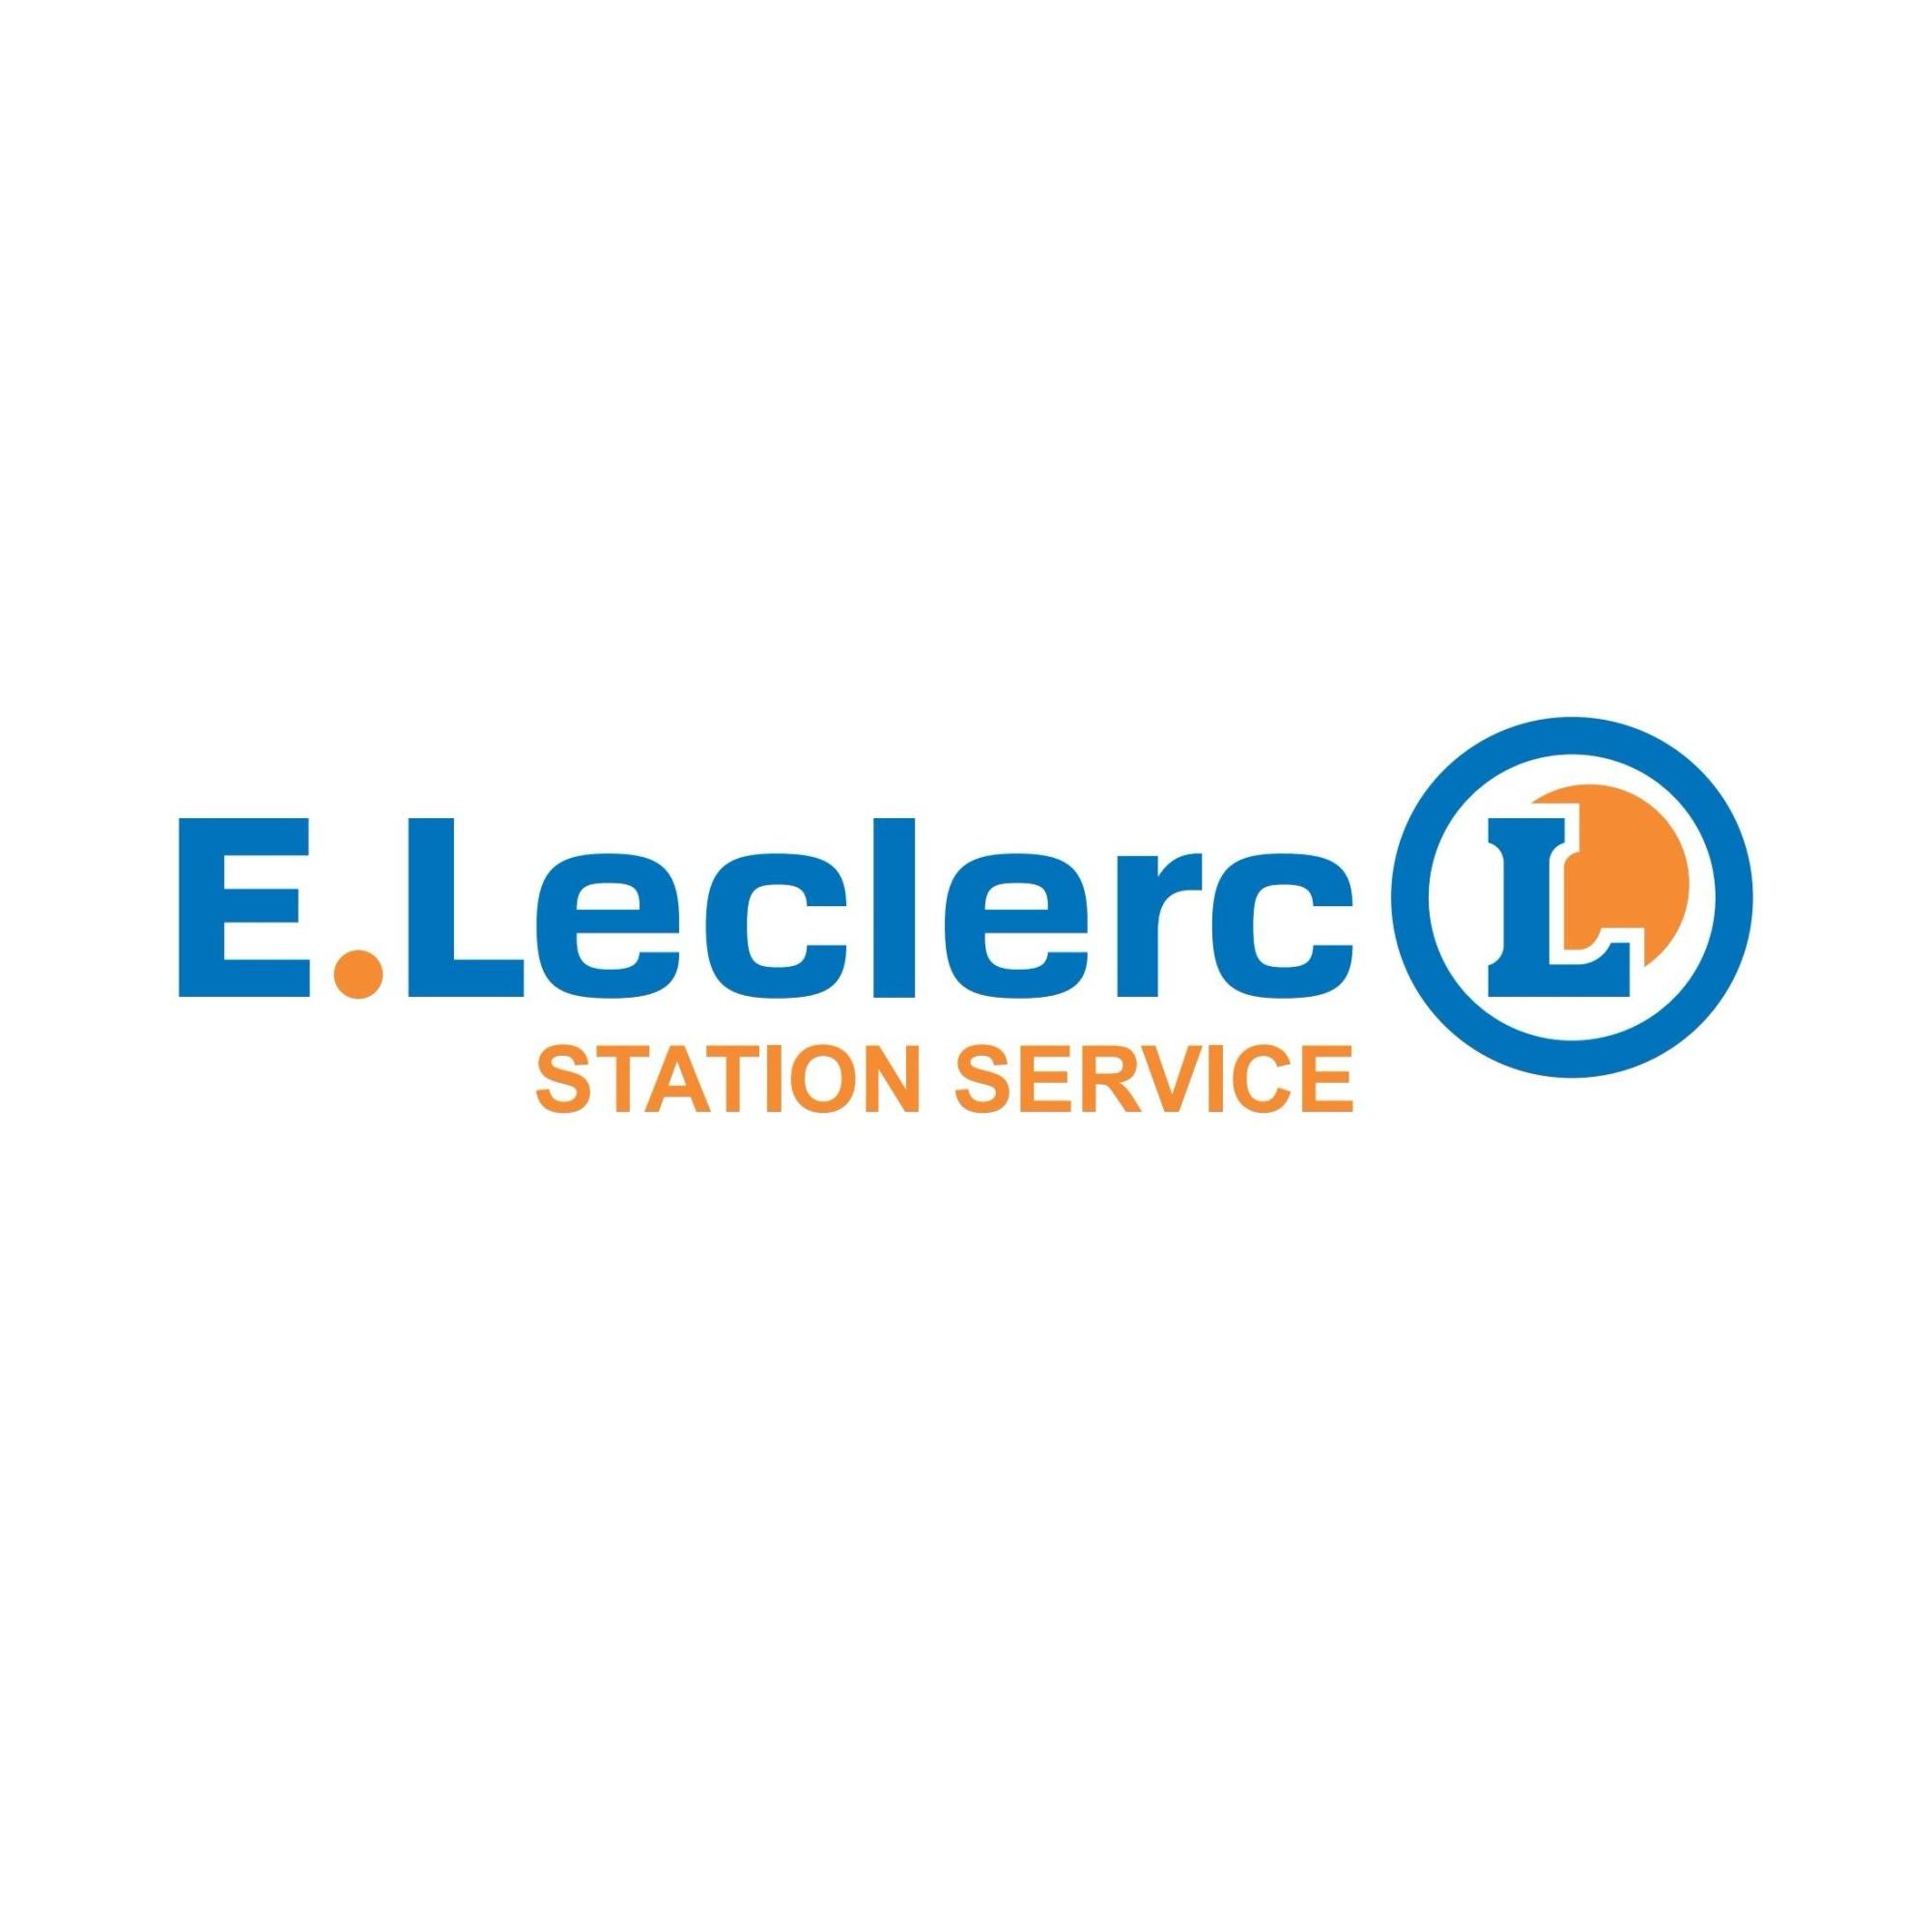 E.leclerc Station Service La Souterraine